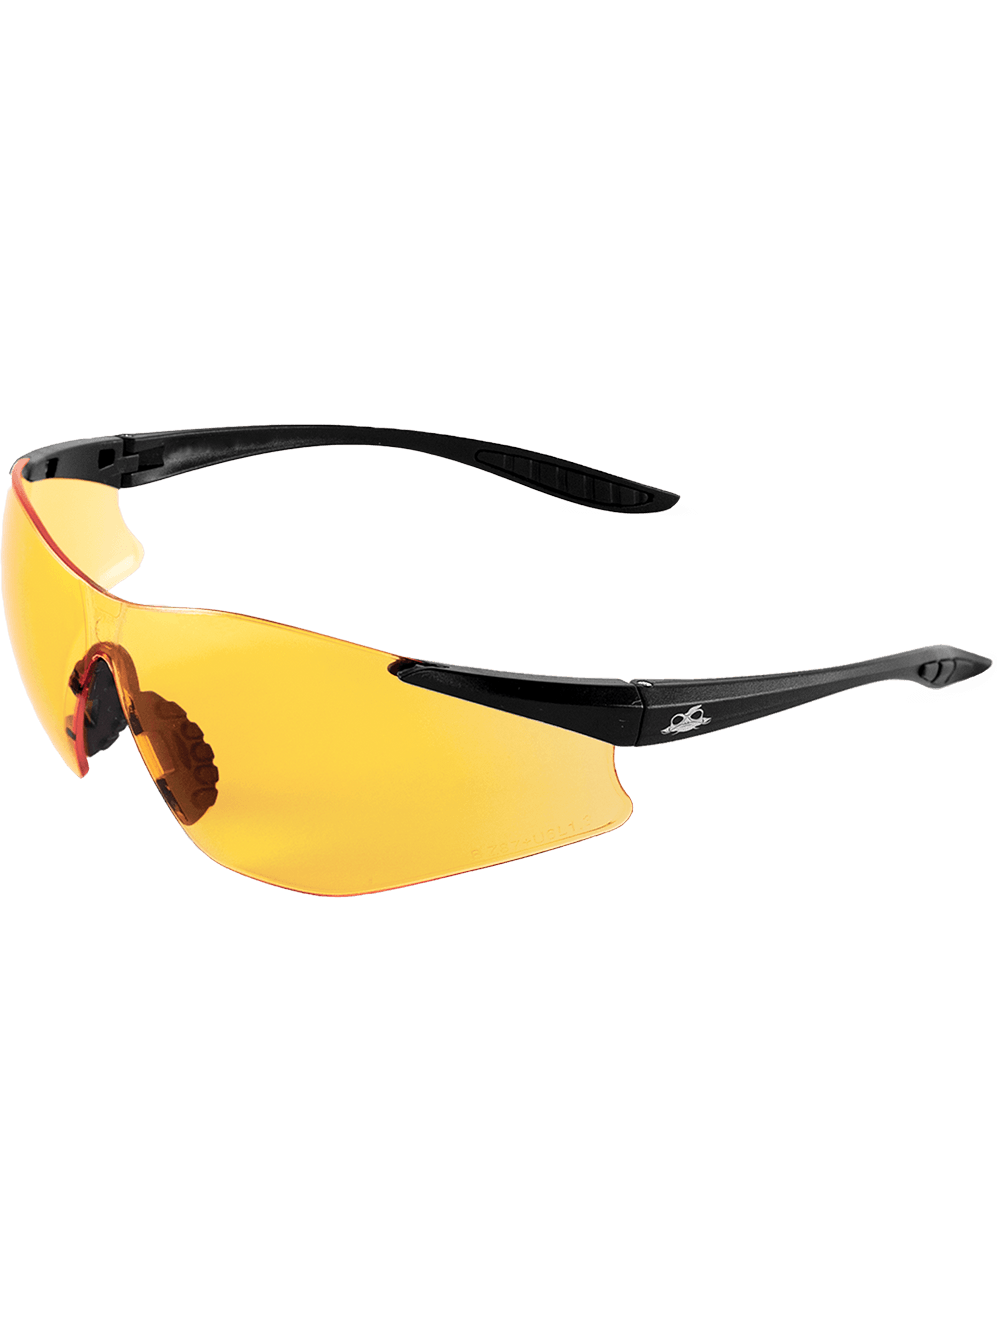 Snipefish® Orange Anti-Fog Lens, Matte Black Frame Safety Glasses - BH7615AF